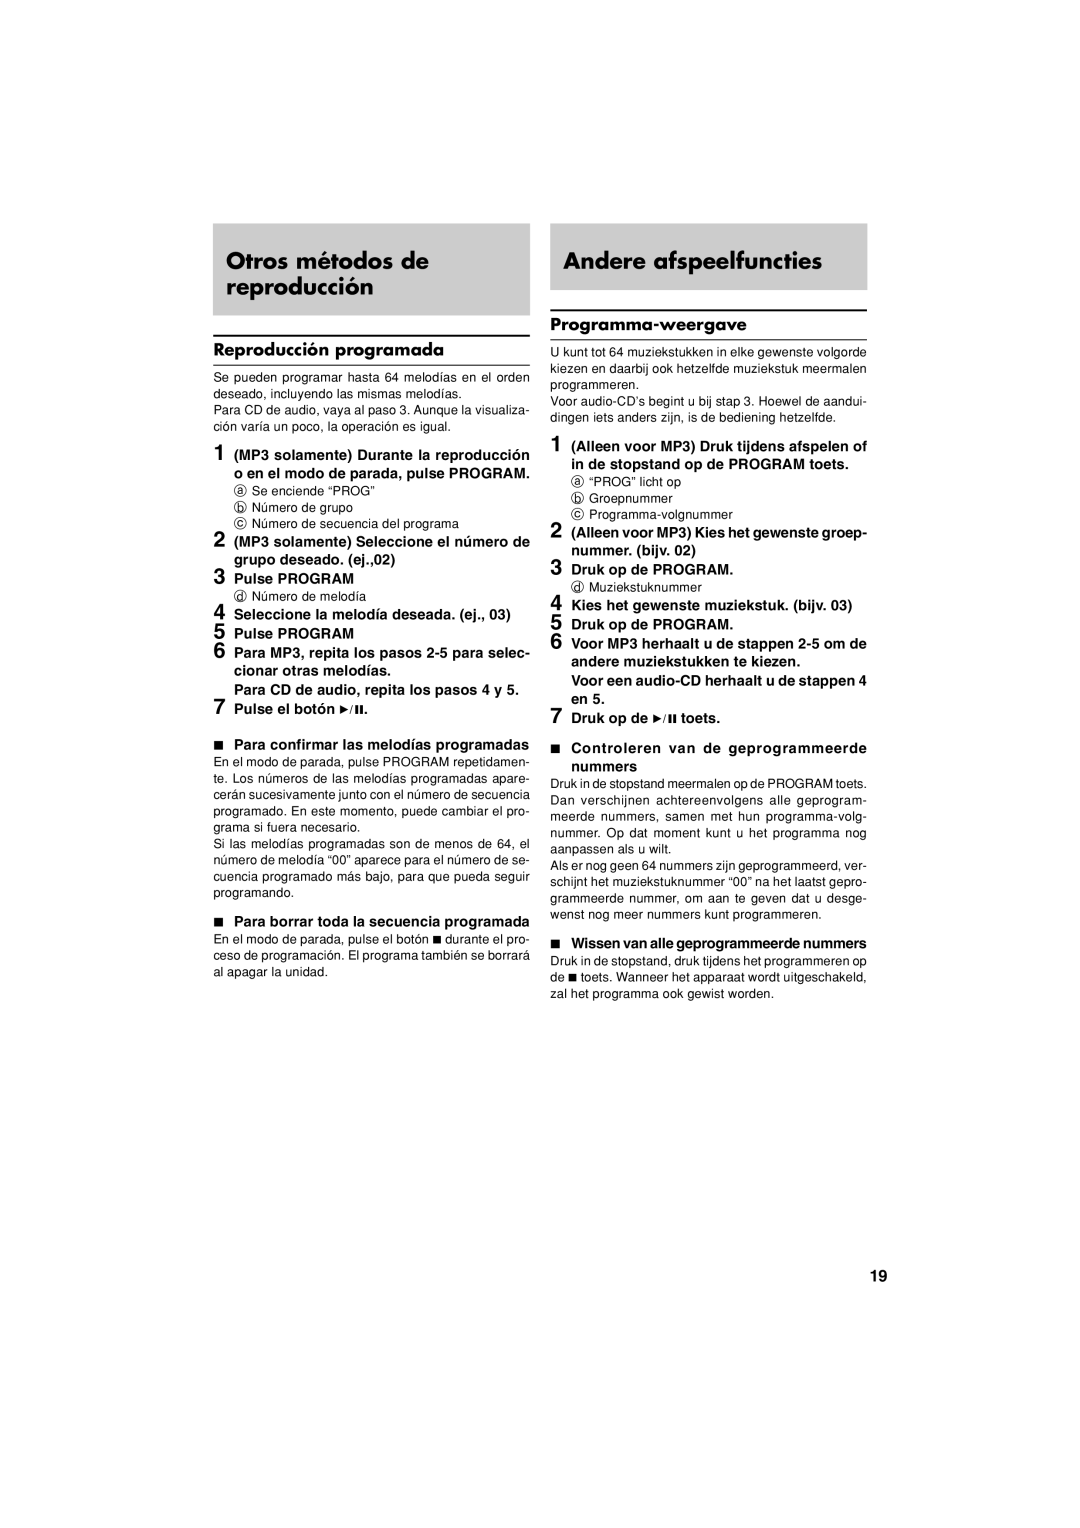 JVC XL-PM20SL manual Otros métodos de reproducción, Andere afspeelfuncties, Reproducción programada, Programma-weergave 